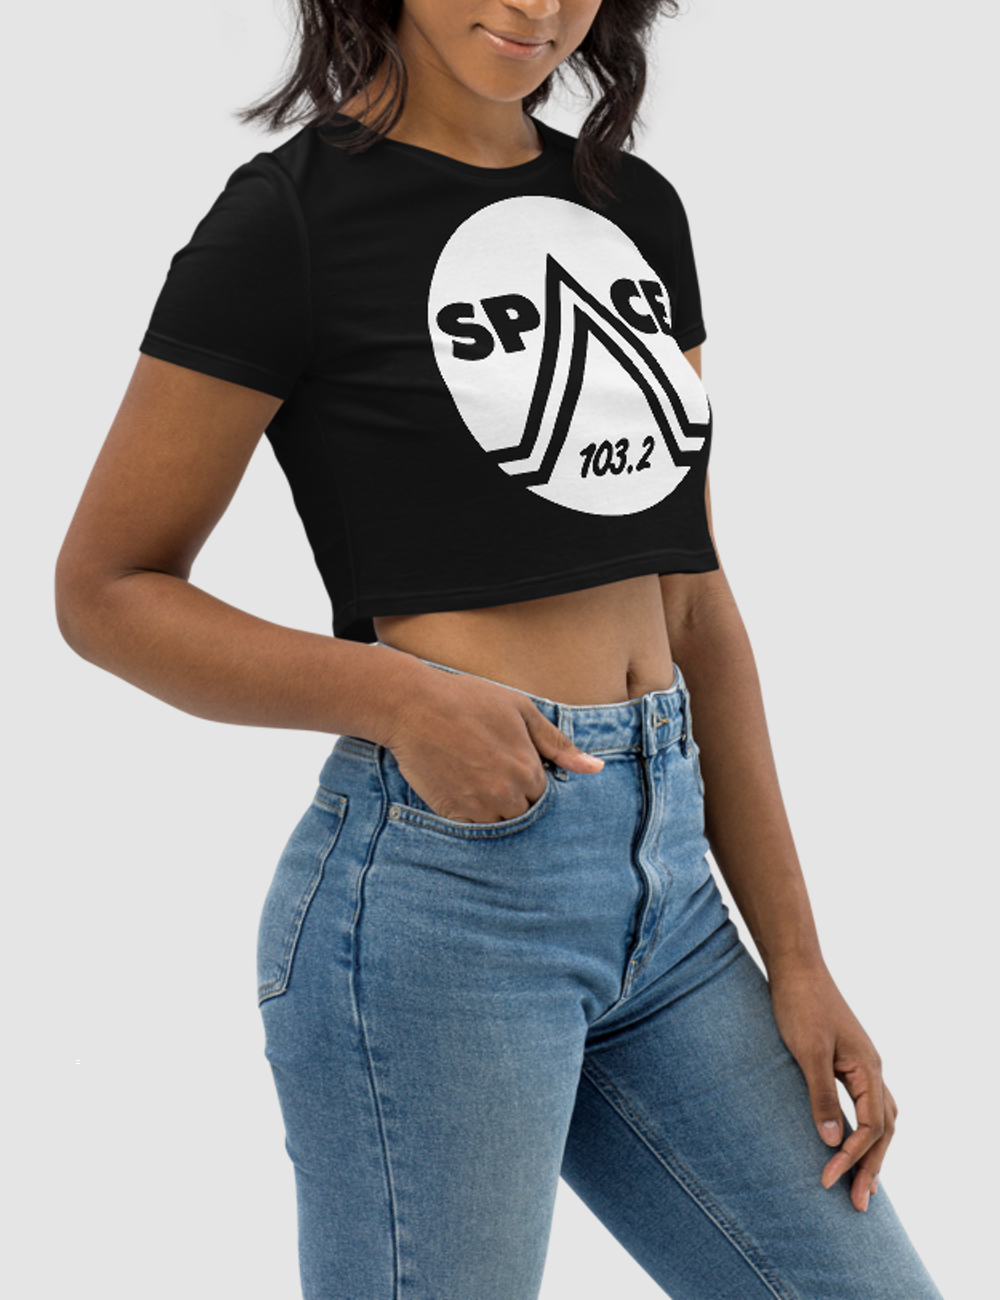 Space 103.2 | Women's Crop Top T-Shirt OniTakai